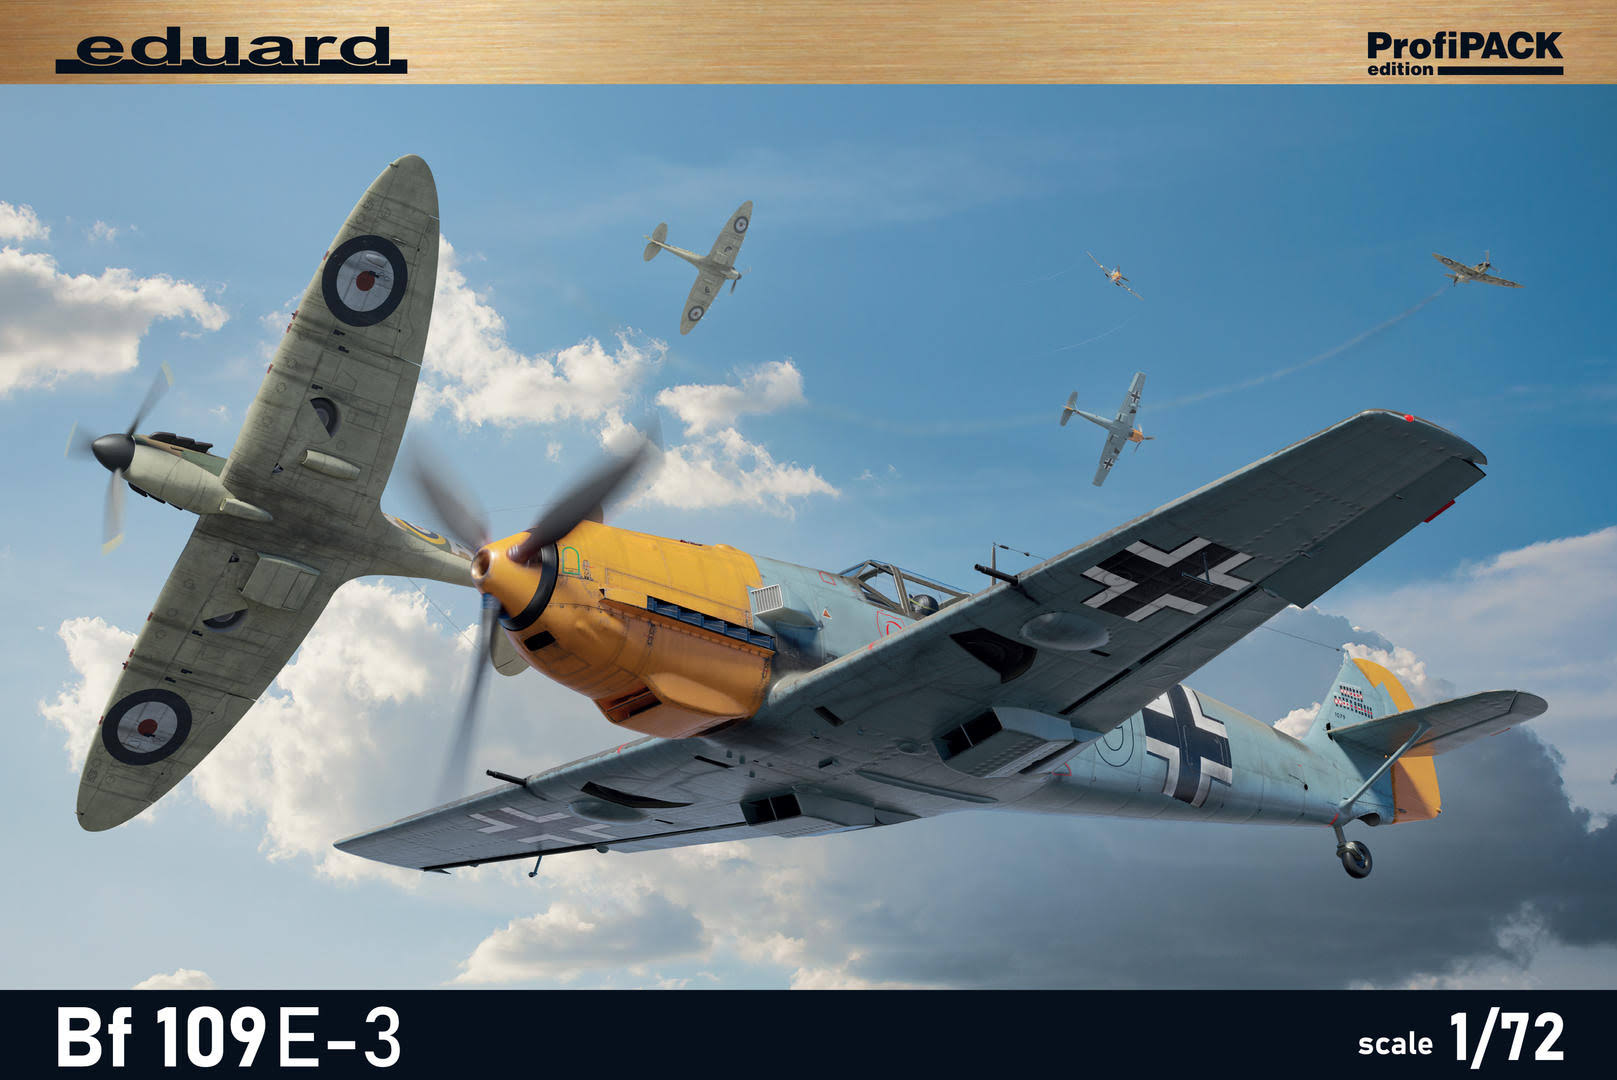 Eduard 7032 1:72 Messerschmitt Bf-109E-3 ProfiPACK Edition